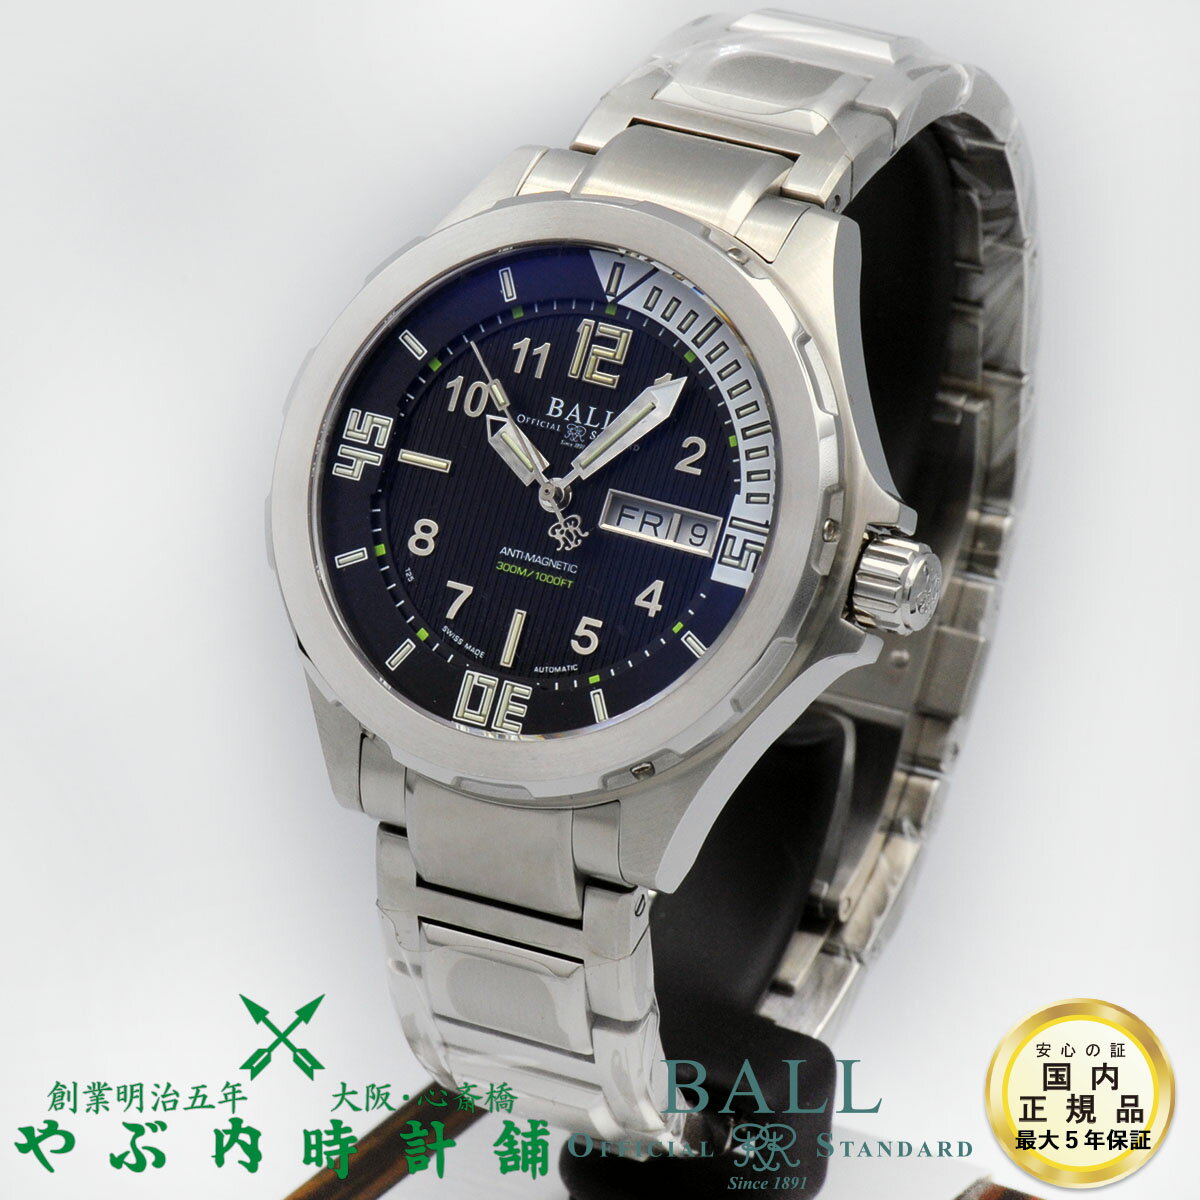 ボールウォッチBALLWATCHエンジニアマスターIIダイバーIIIDM3020A-SAJ-BK腕時計自動巻正規品